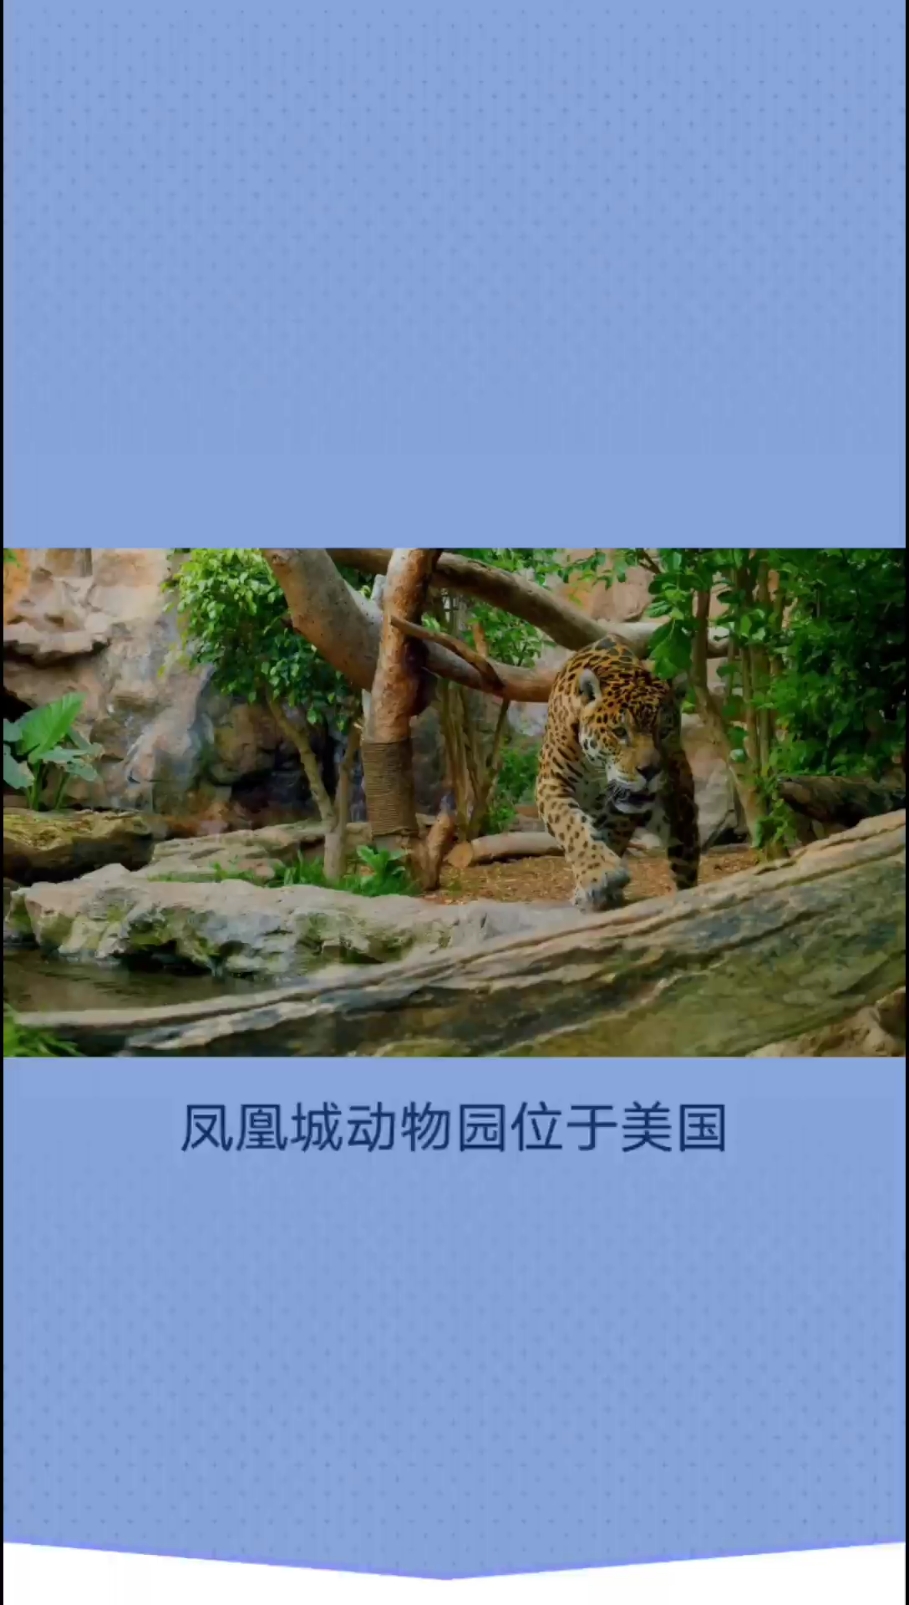 凤凰城动物园-畅游动物王国